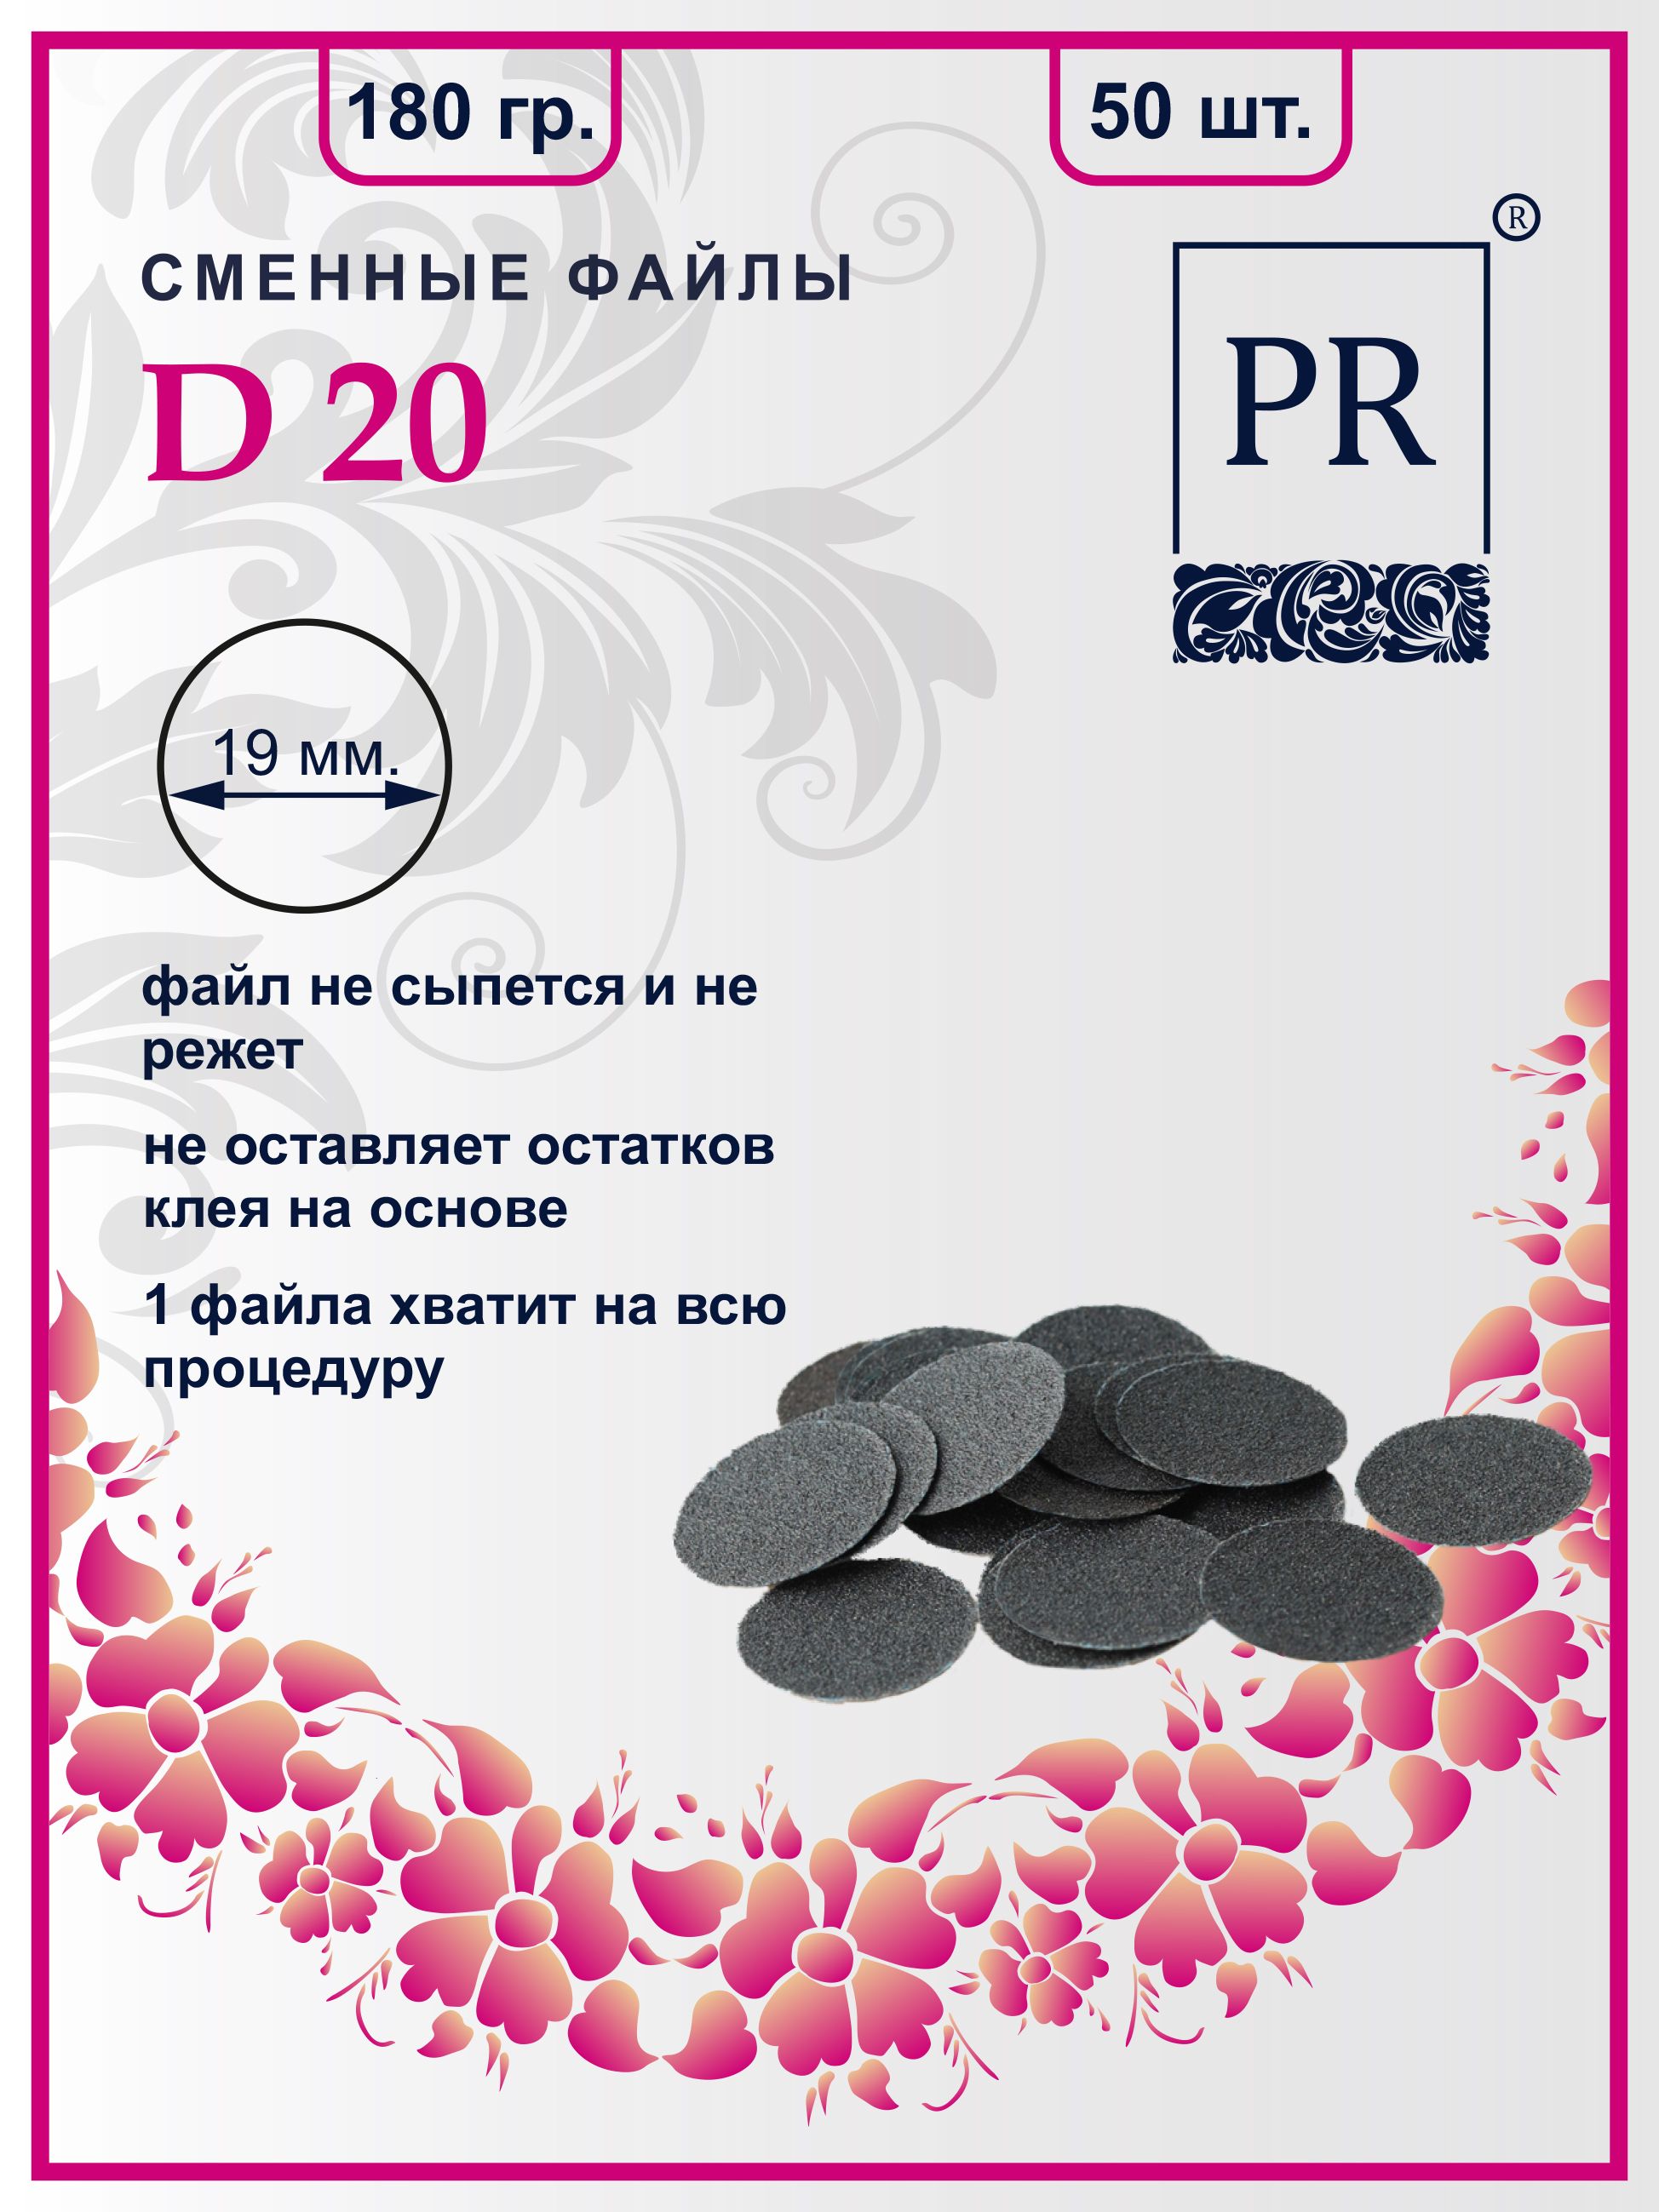 Сменные файлы Pilochki Russia диски для педикюра для диска М 180 грит 50 штук